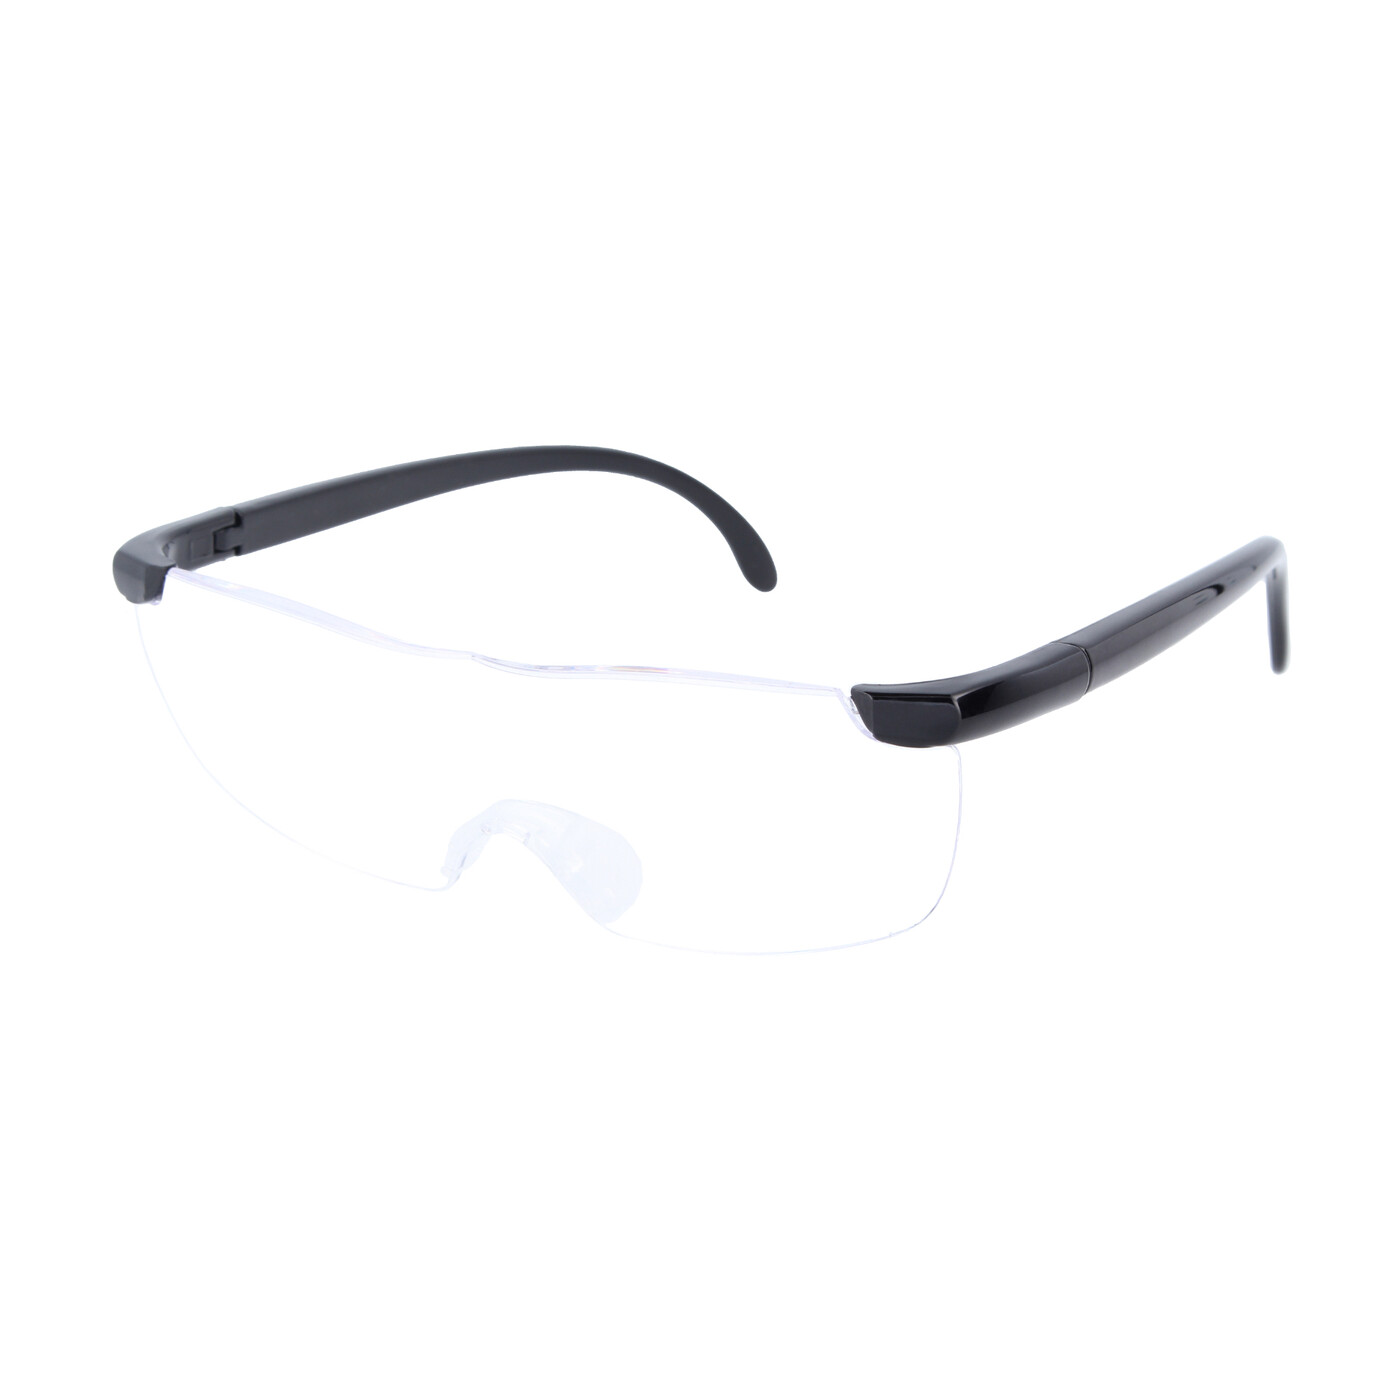 160% Vergrößerung Vergrößerungsbrille Lupenbrille Zauberbrille Lupe Feinarbeiten 